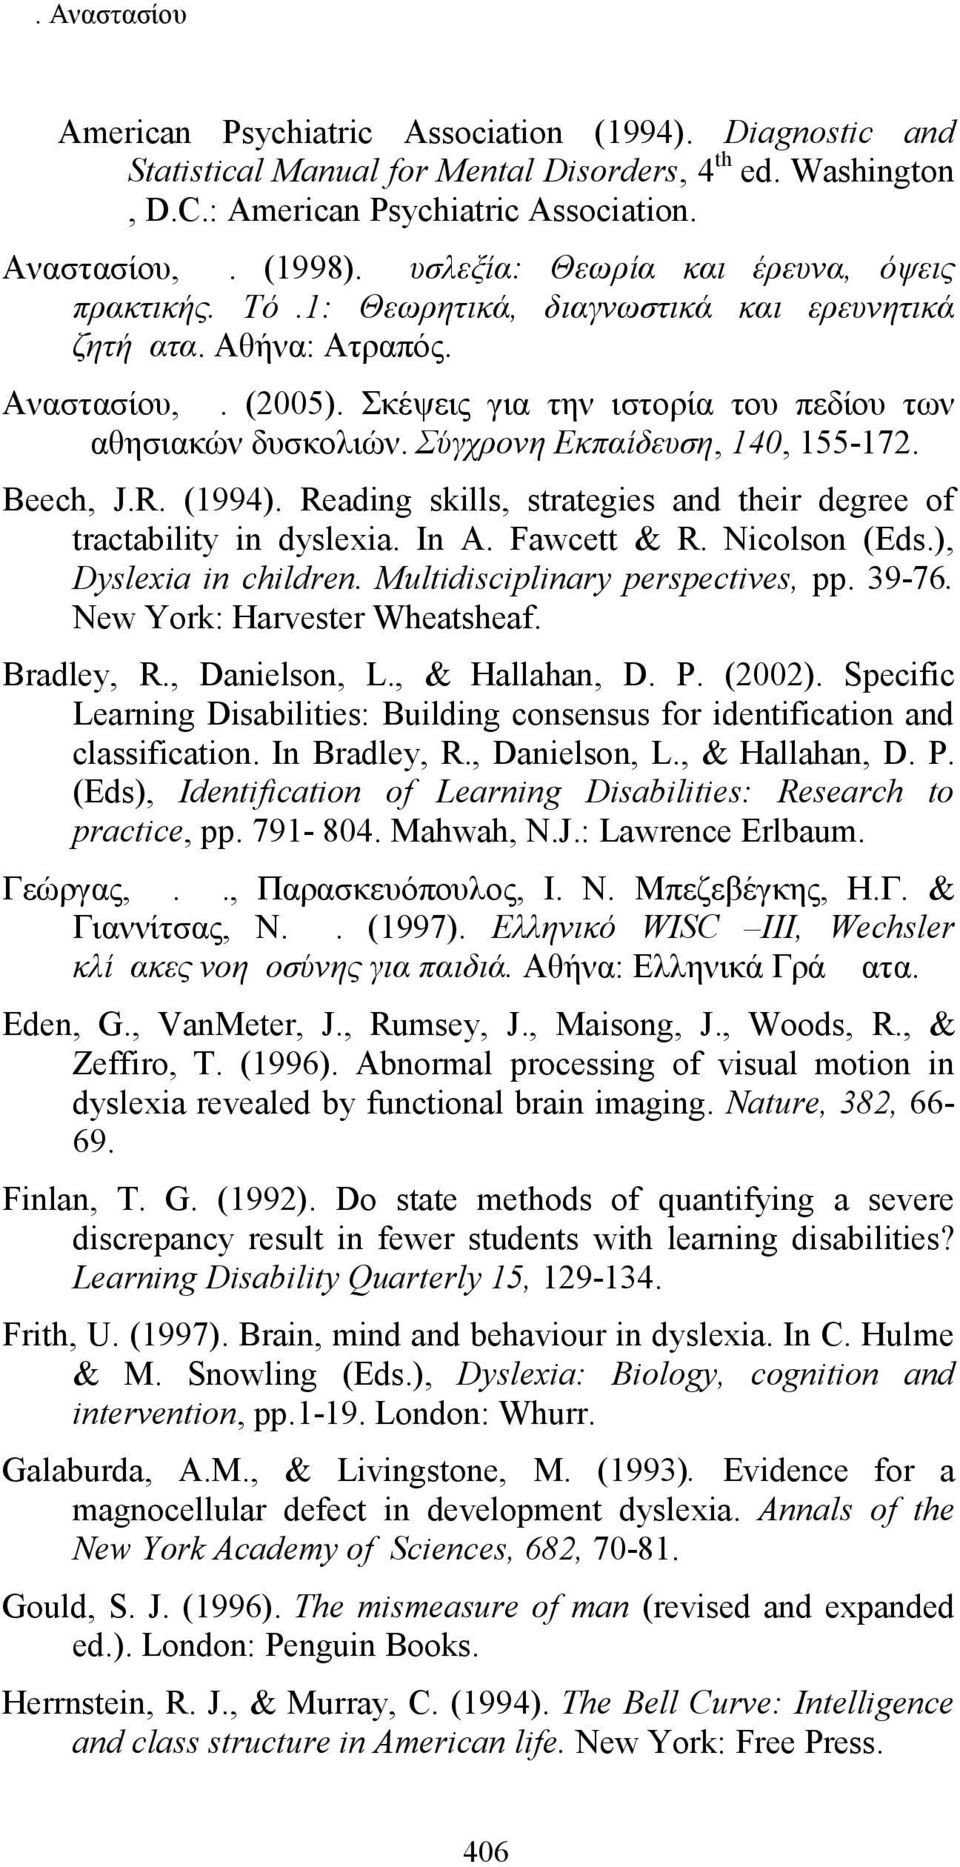 Σύγχρονη Εκπαίδευση, 140, 155-172. Beech, J.R. (1994). Reading skills, strategies and their degree of tractability in dyslexia. In A. Fawcett & R. Nicolson (Eds.), Dyslexia in children.